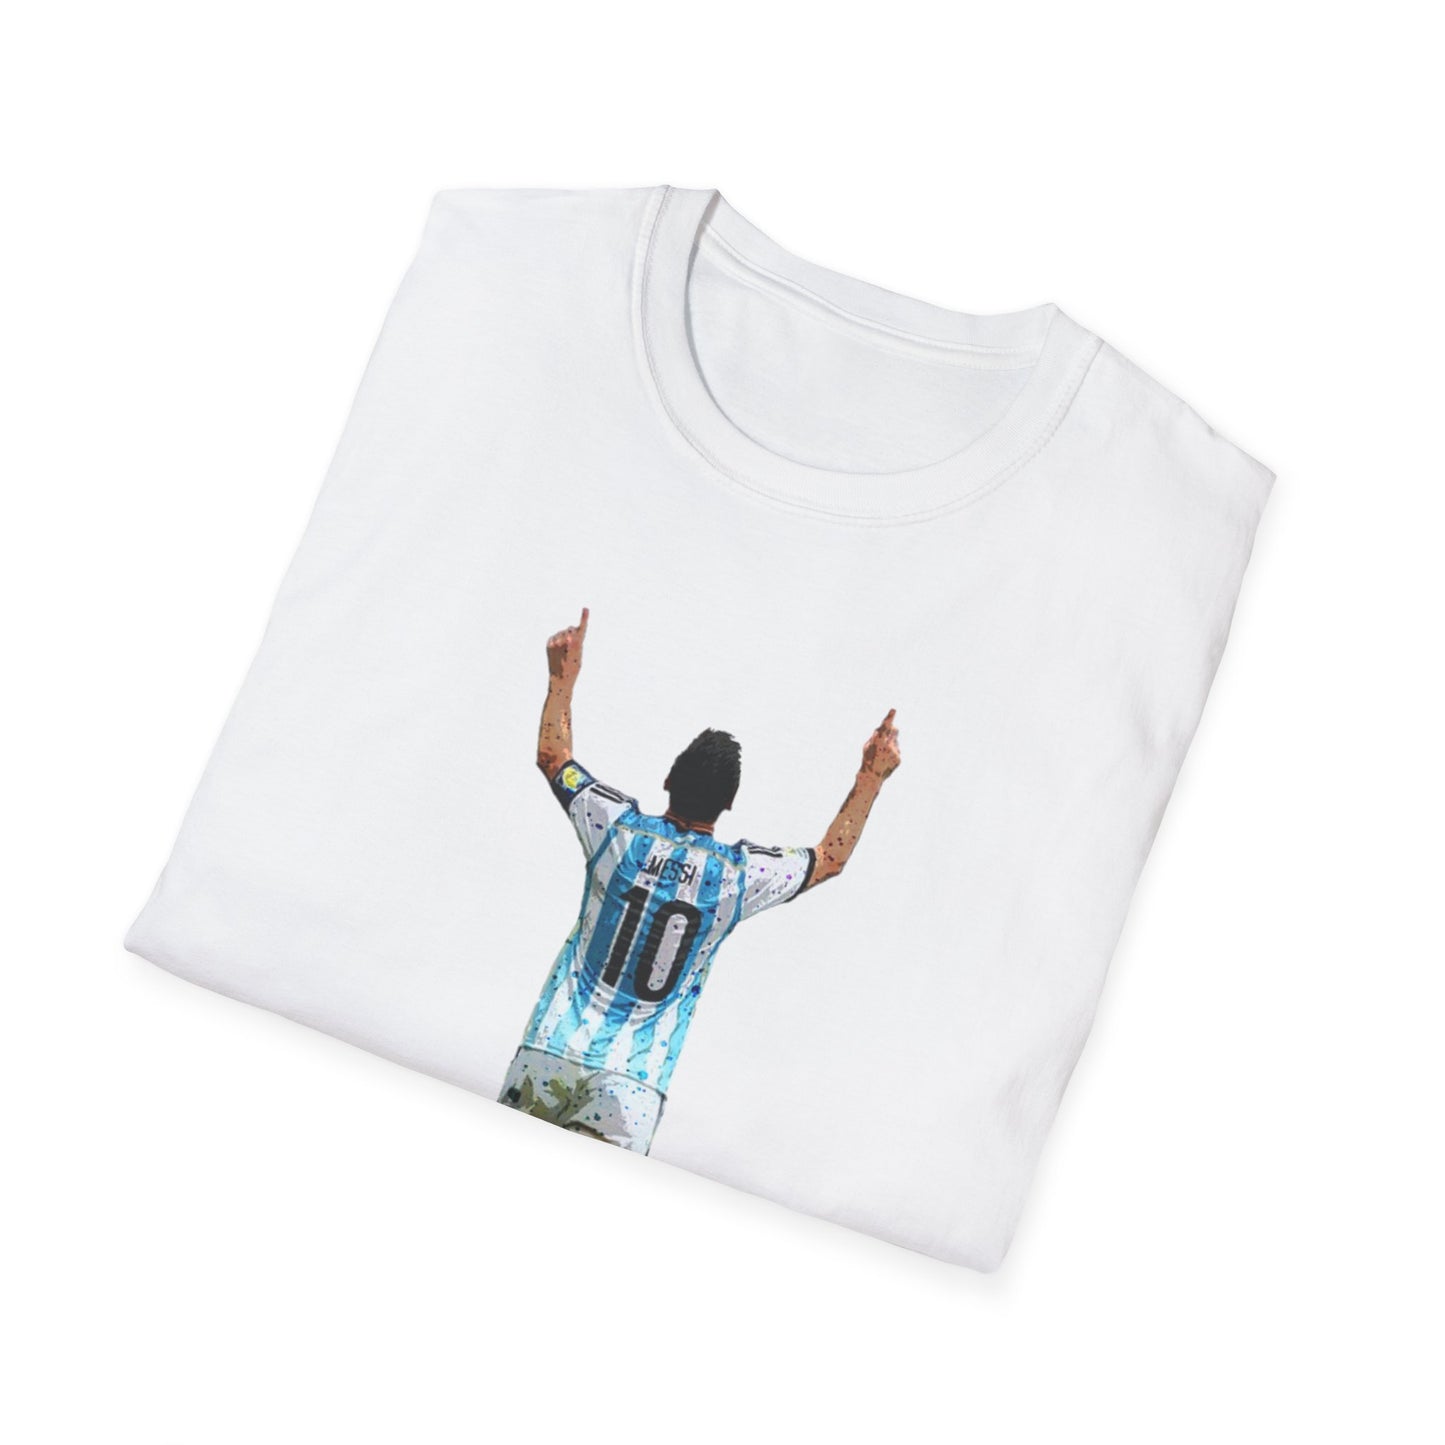 Messi Celebration Argentina Unisex U-Neck T-Shirt